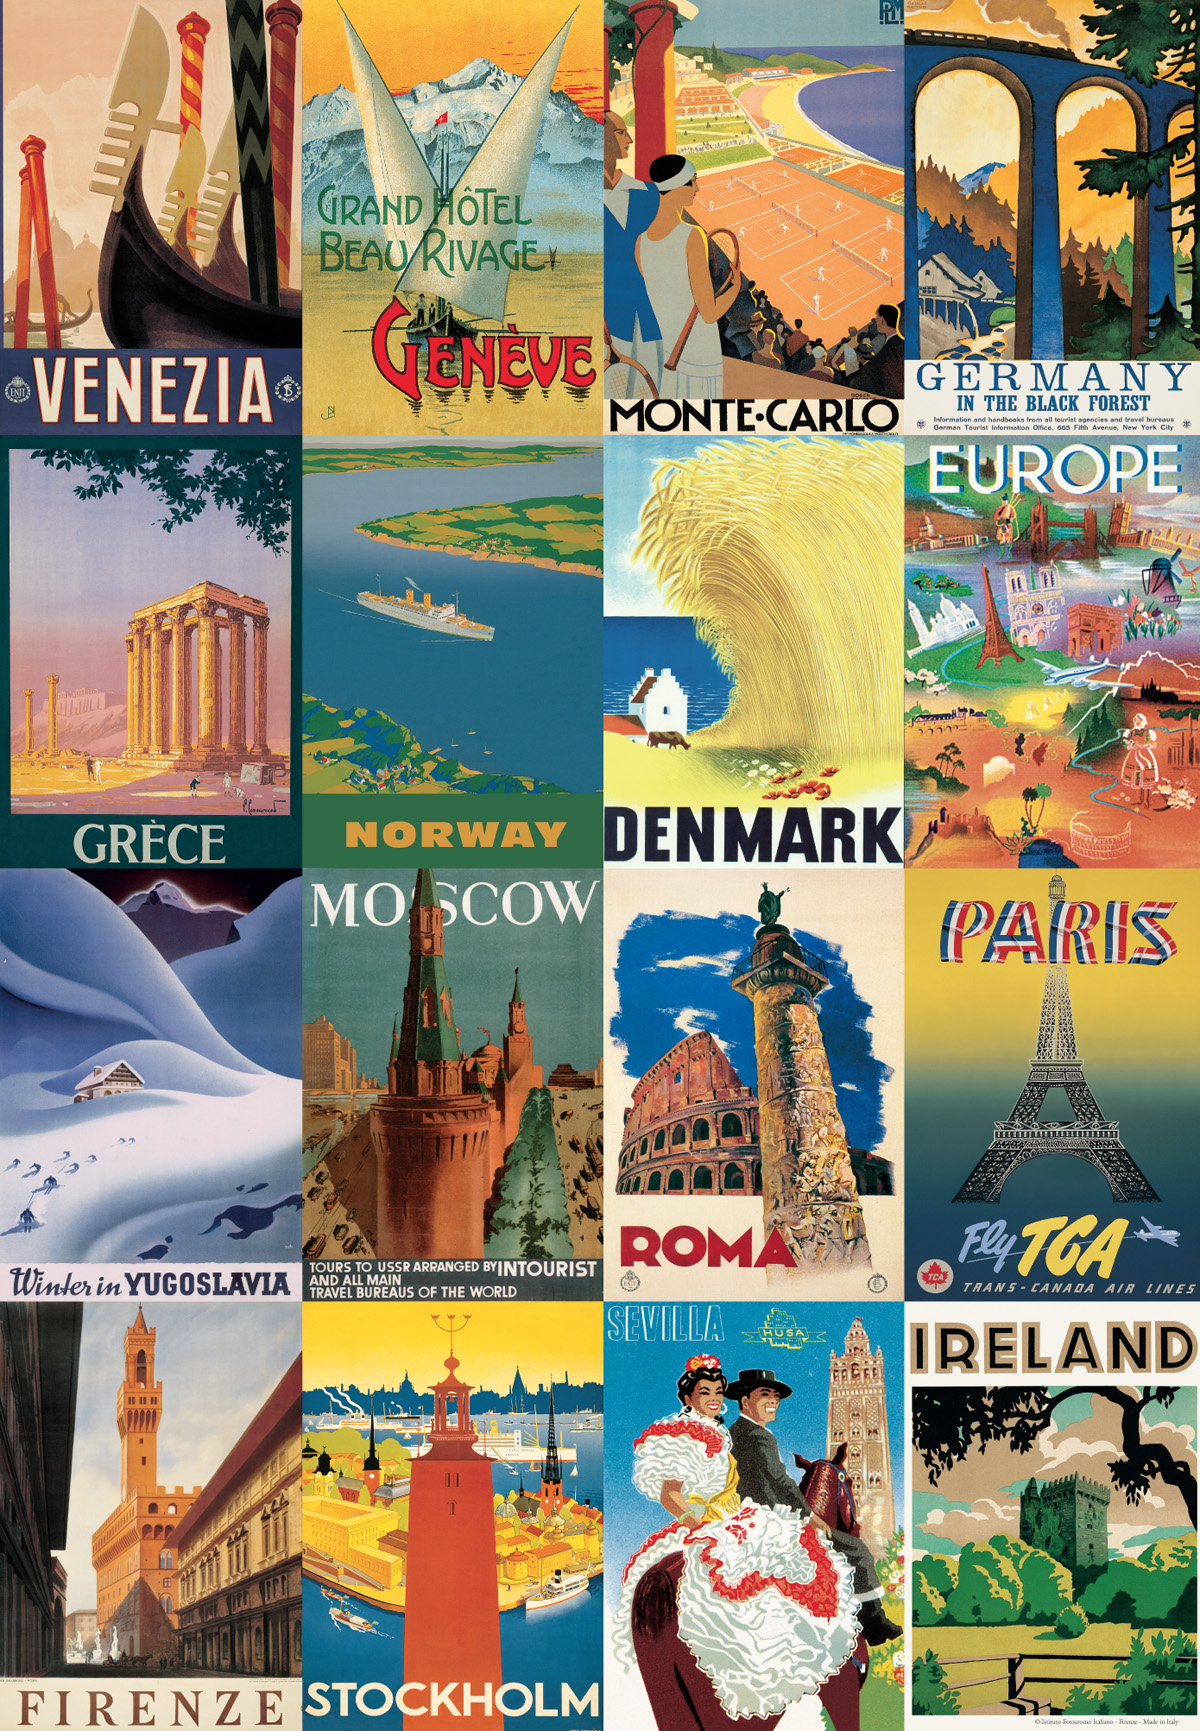 Những tấm poster du lịch sẽ giúp cho bạn có một kế hoạch du lịch hoàn hảo, nó sẽ đưa bạn đến khắp thế giới và cung cấp cho bạn những lời khuyên tuyệt vời về các điểm đến hấp dẫn. Hãy đến với chúng tôi để khám phá và lên kế hoạch cho chuyến đi trong mơ của bạn.